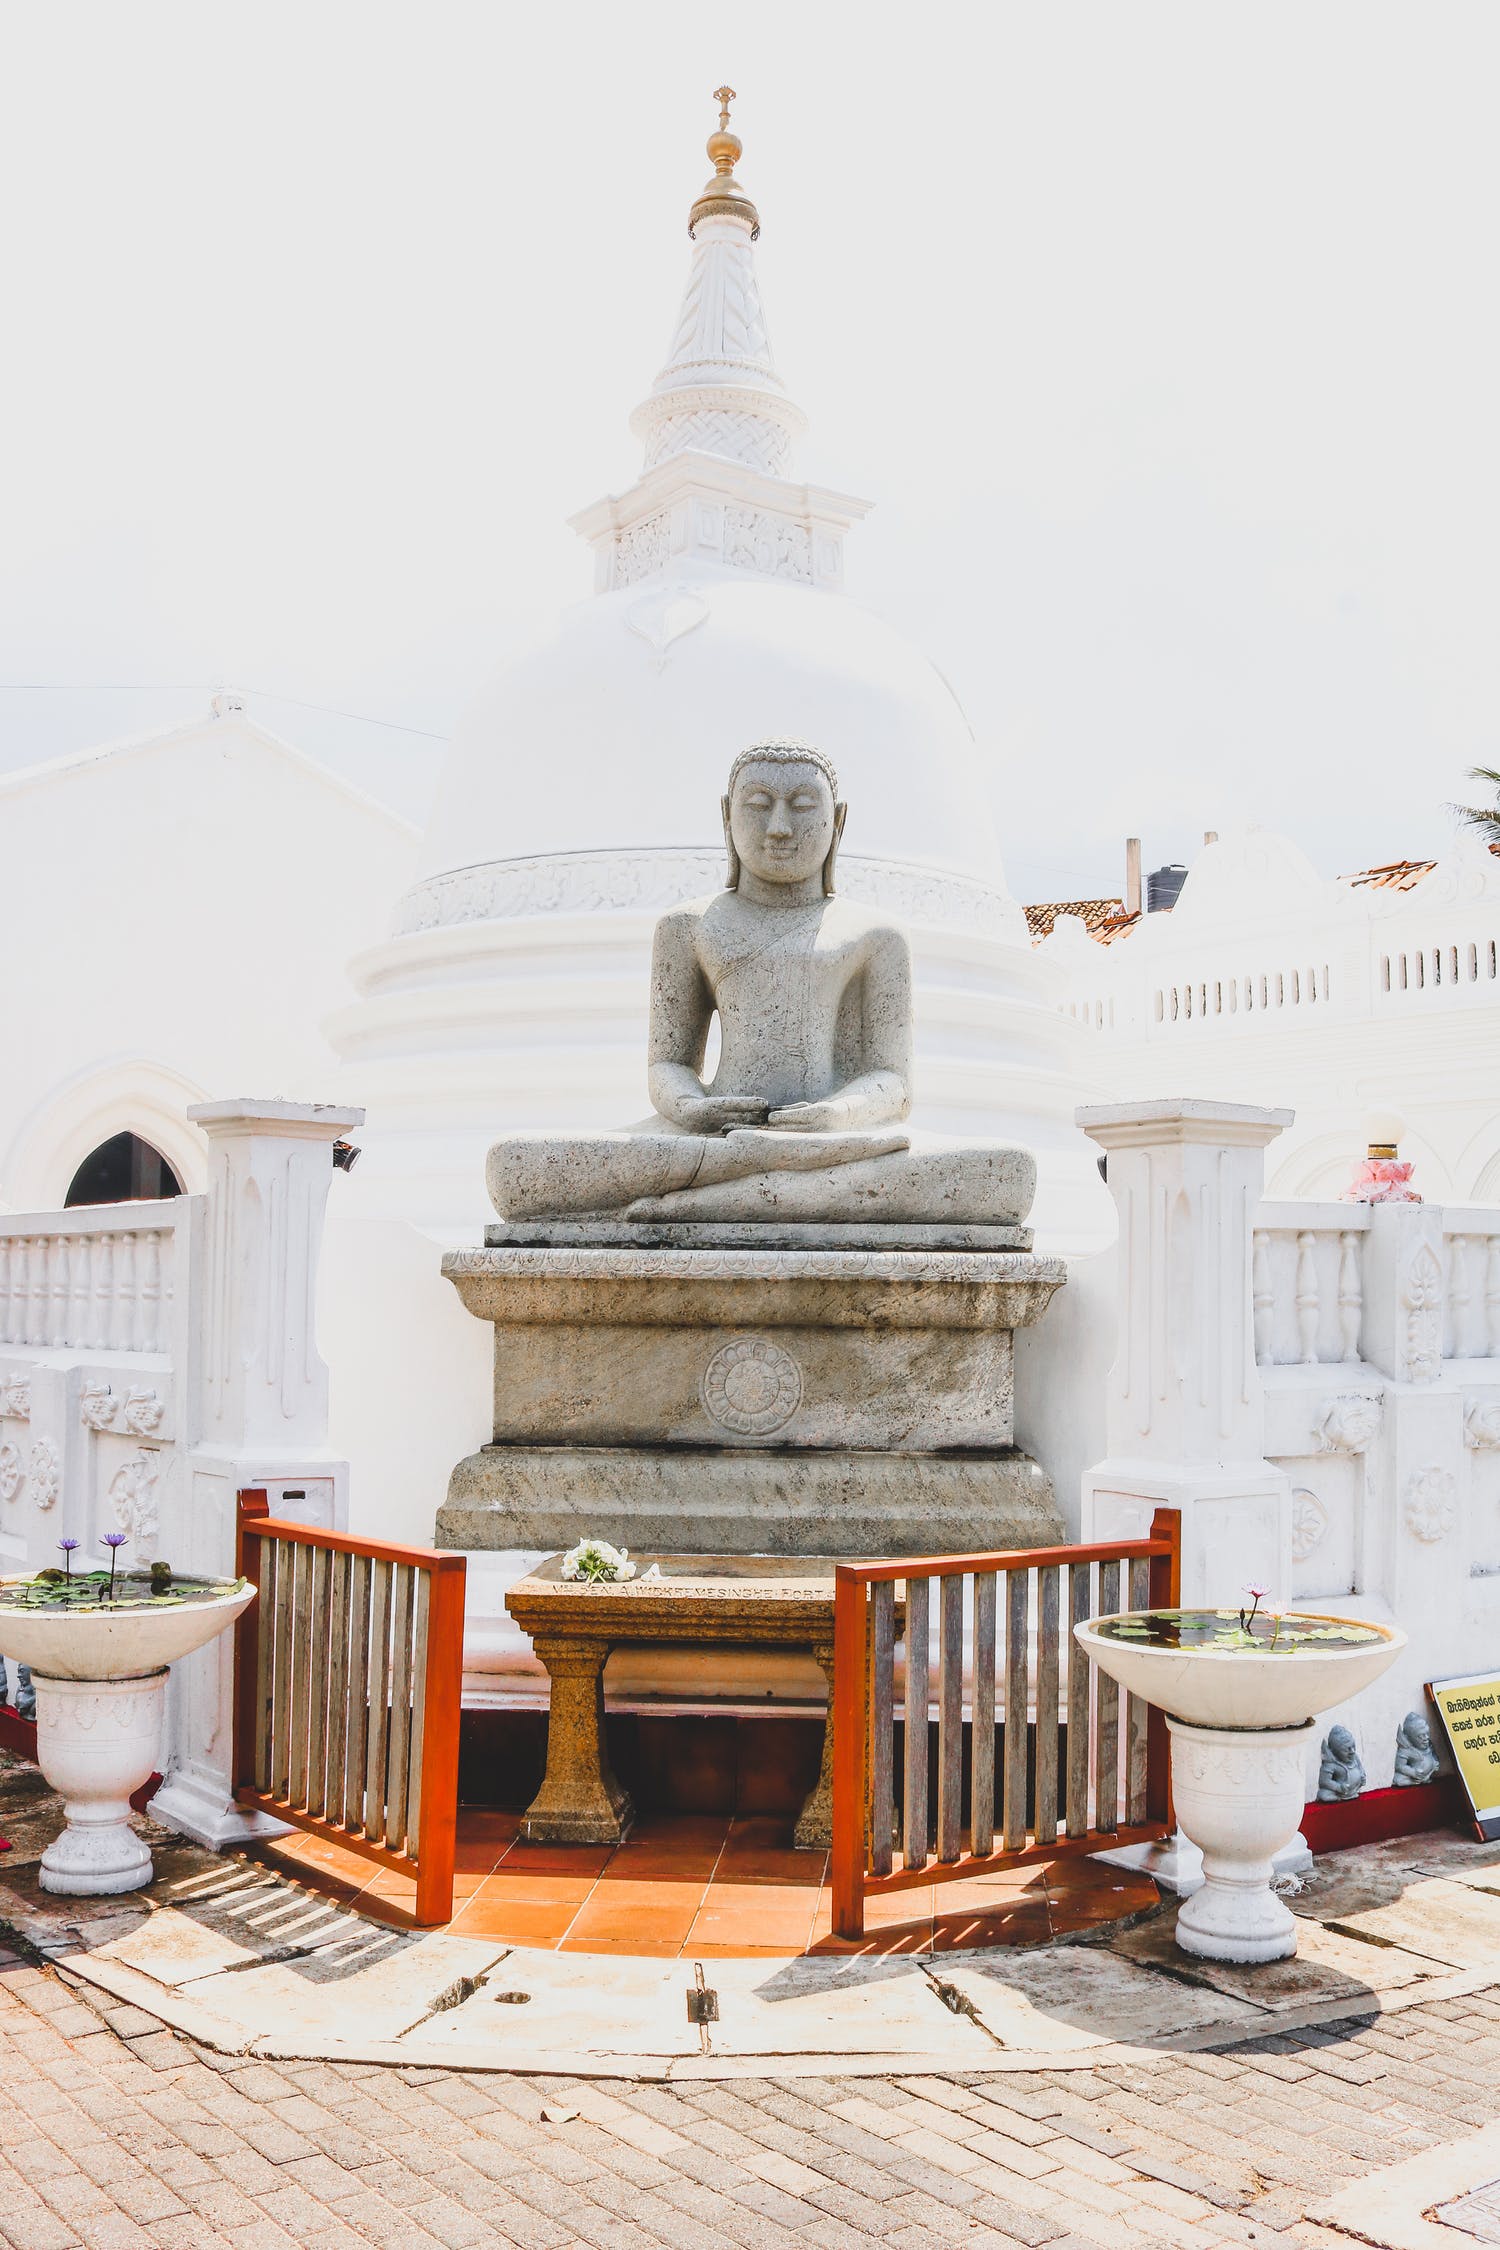 Buddha in Galle, Sri Lanka